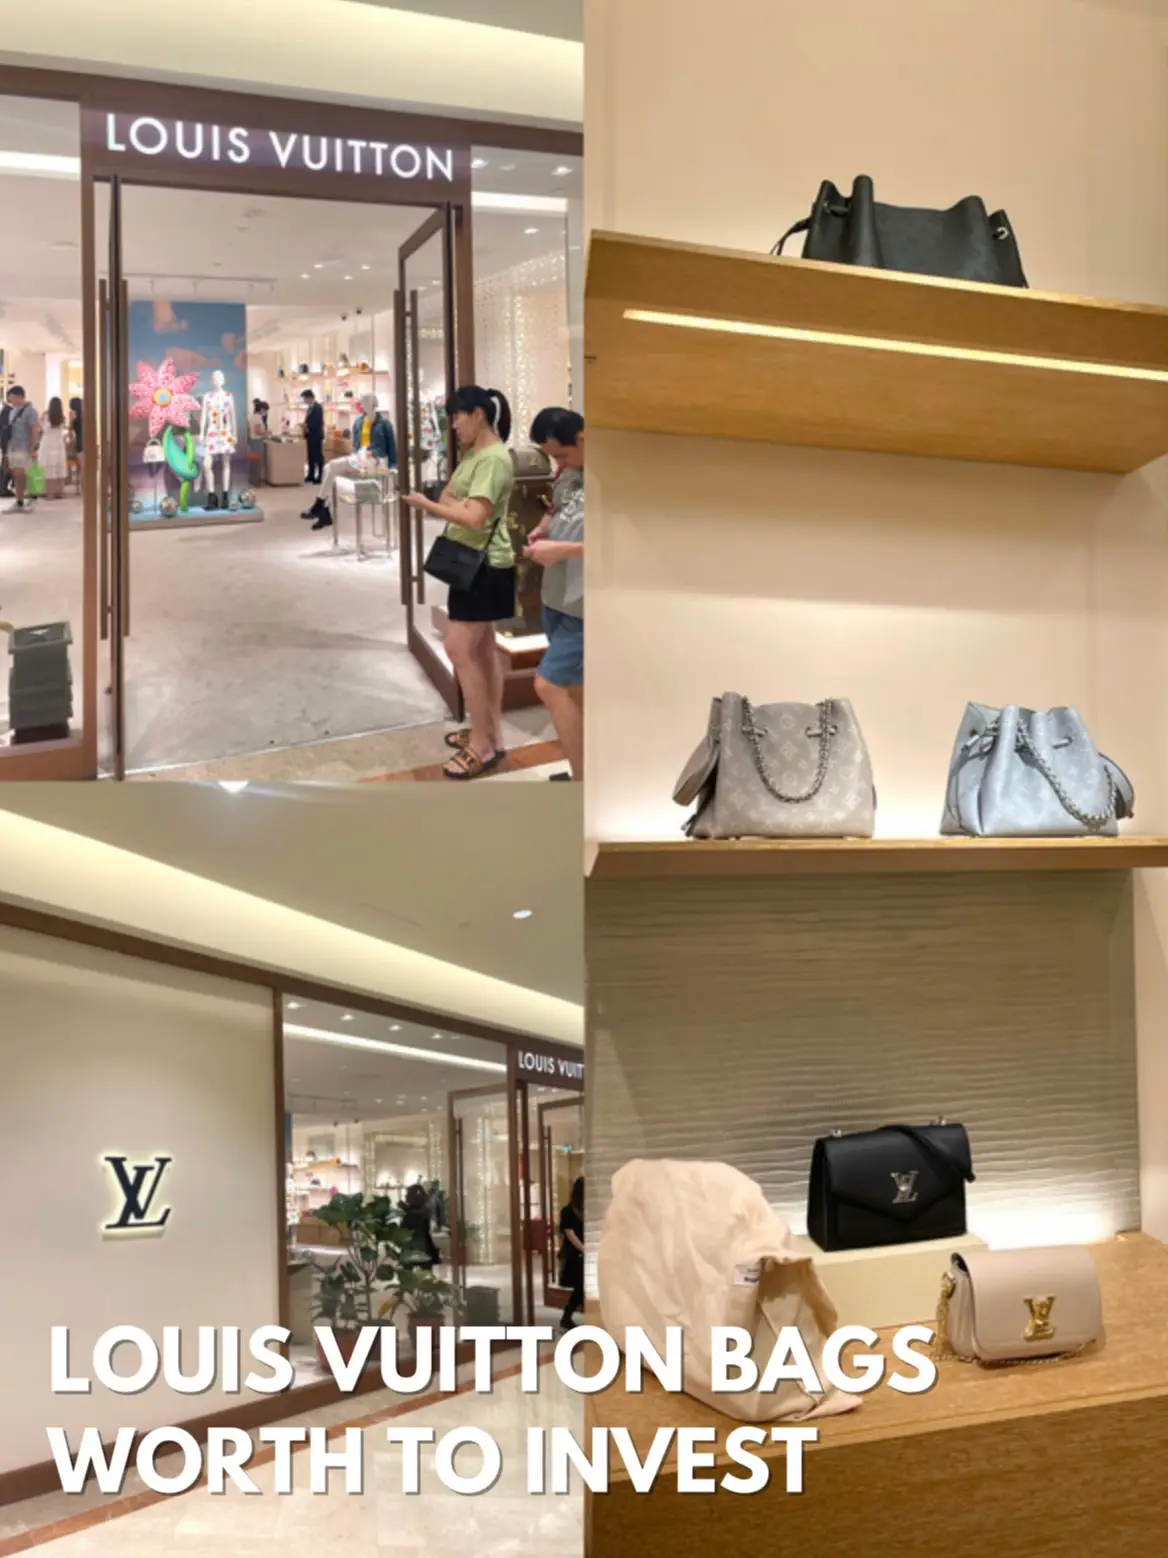 Harga Jual Tas Louis Vuitton di RI Bersaing dengan Singapura